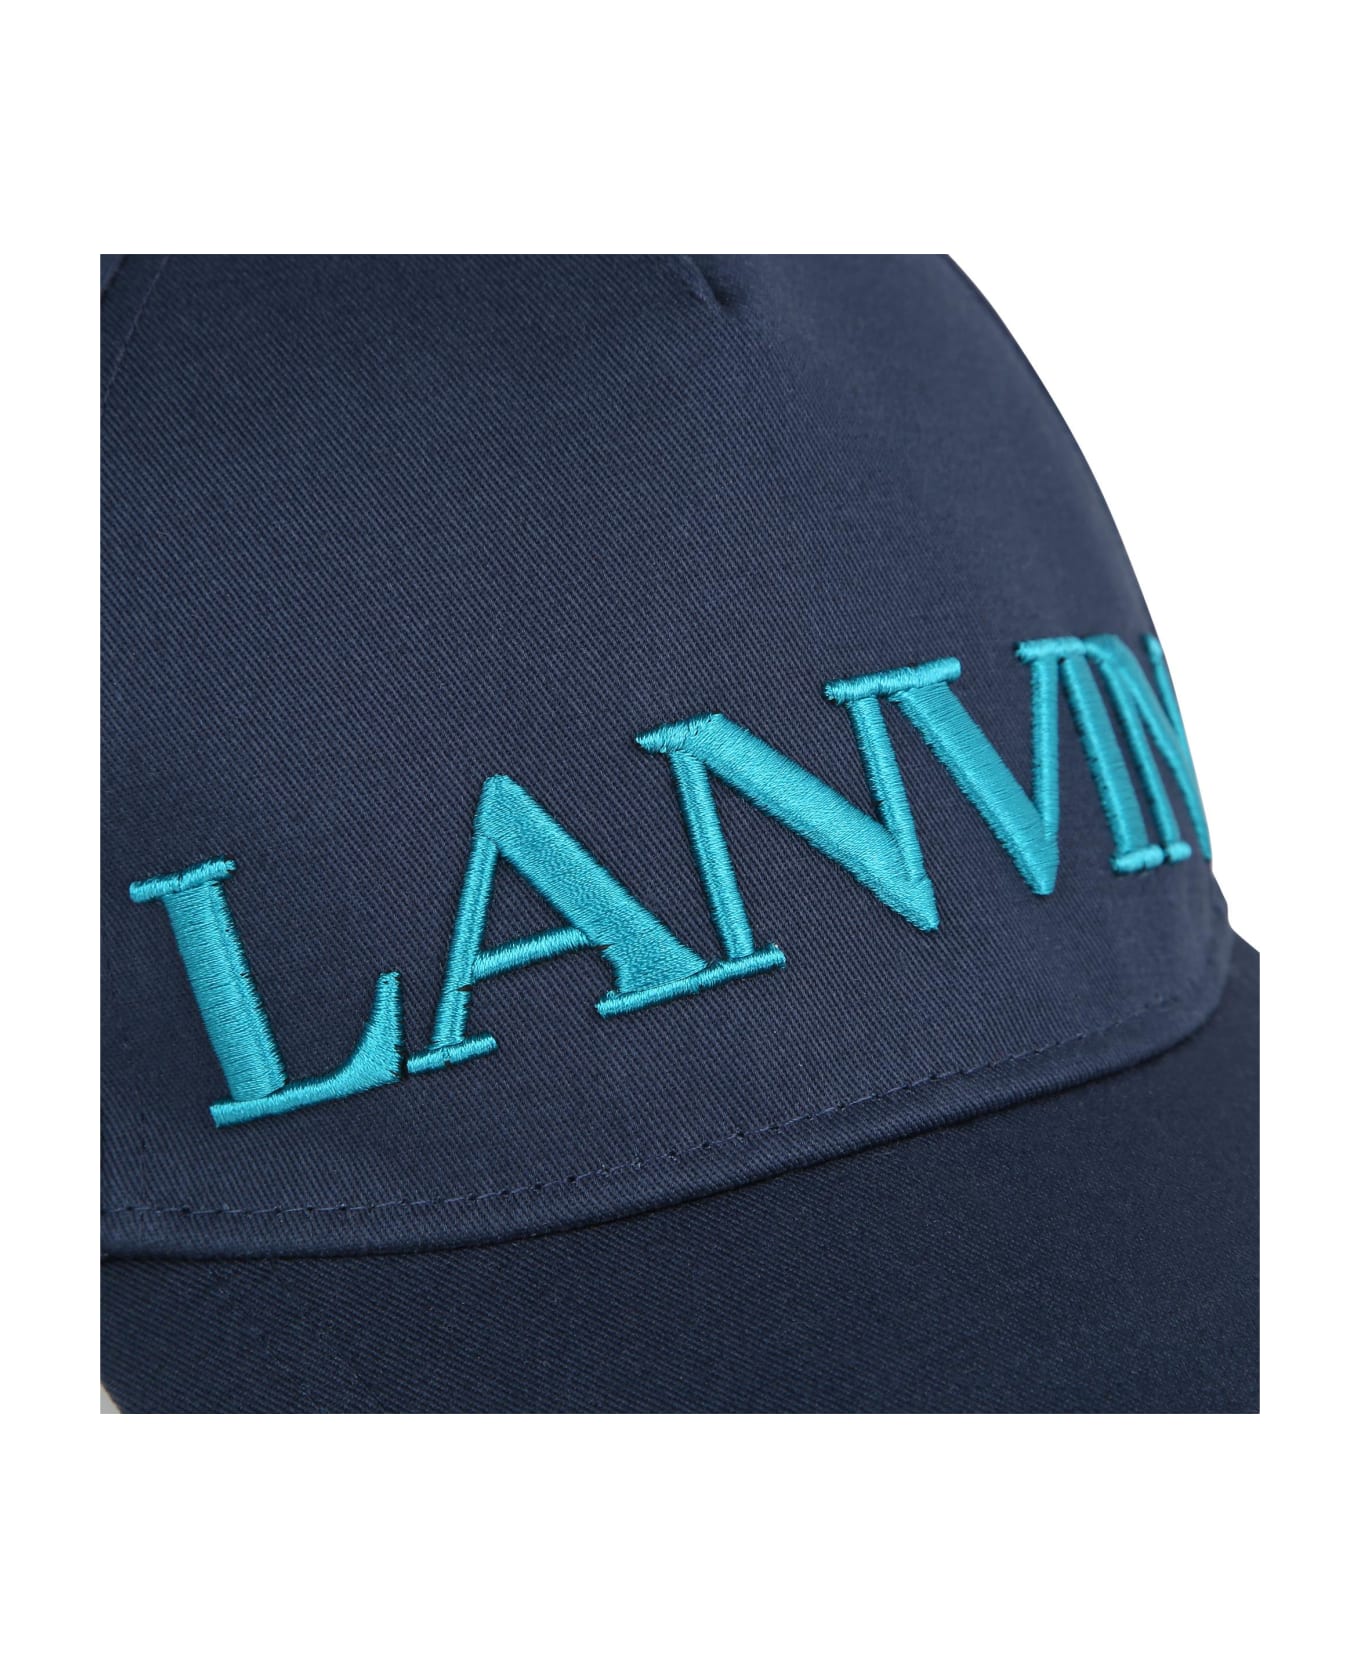 Lanvin Cappello Con Logo - H Marine